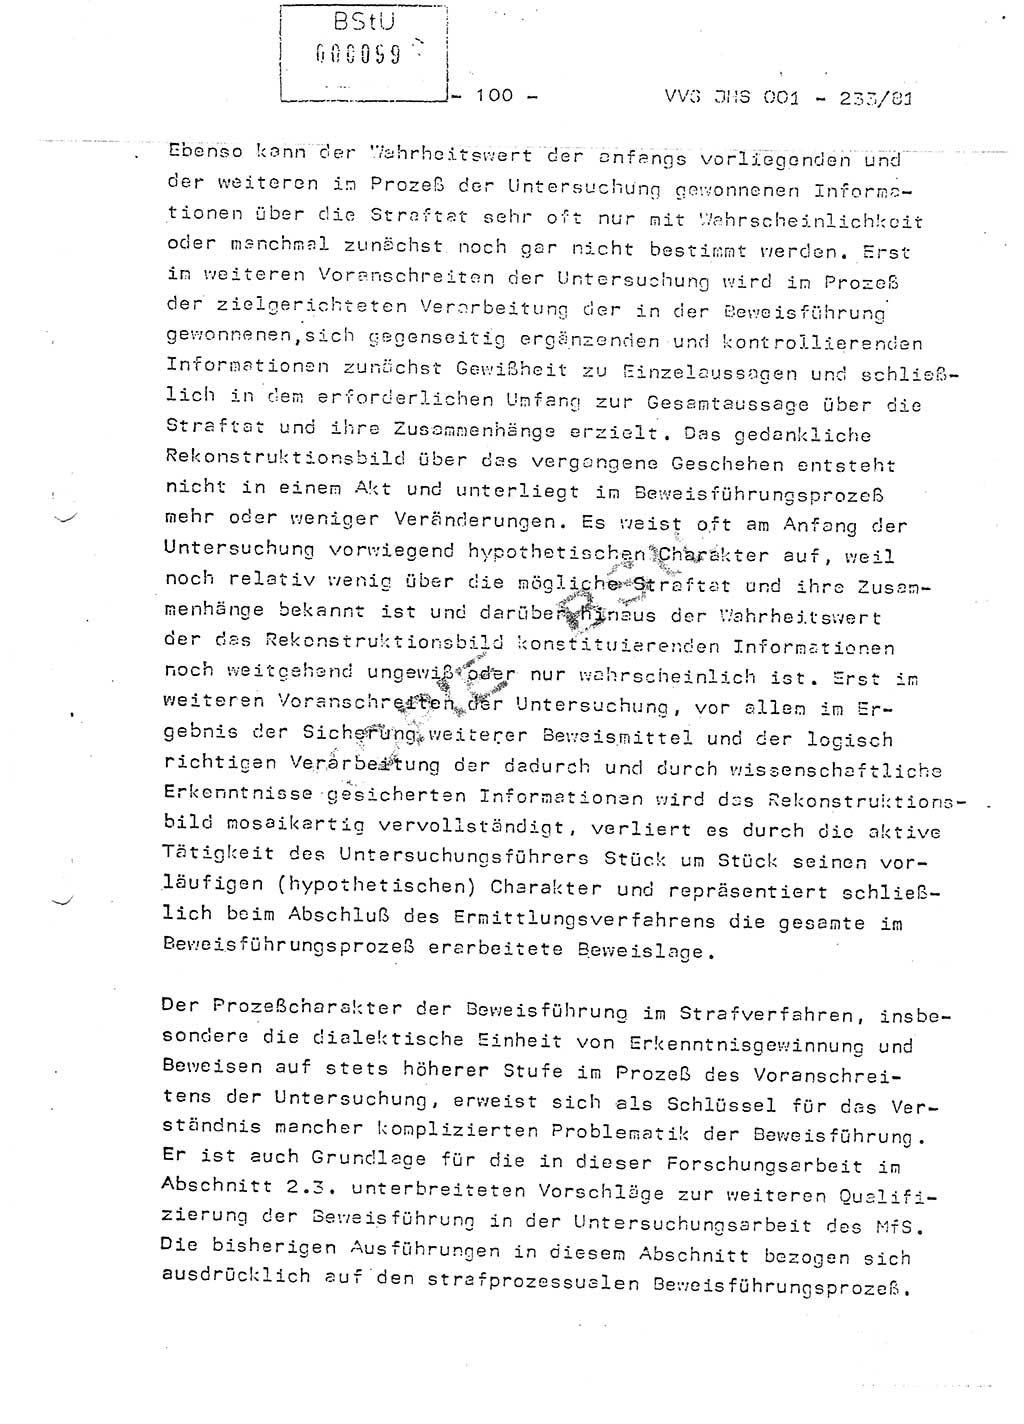 Dissertation Oberstleutnant Horst Zank (JHS), Oberstleutnant Dr. Karl-Heinz Knoblauch (JHS), Oberstleutnant Gustav-Adolf Kowalewski (HA Ⅸ), Oberstleutnant Wolfgang Plötner (HA Ⅸ), Ministerium für Staatssicherheit (MfS) [Deutsche Demokratische Republik (DDR)], Juristische Hochschule (JHS), Vertrauliche Verschlußsache (VVS) o001-233/81, Potsdam 1981, Blatt 100 (Diss. MfS DDR JHS VVS o001-233/81 1981, Bl. 100)